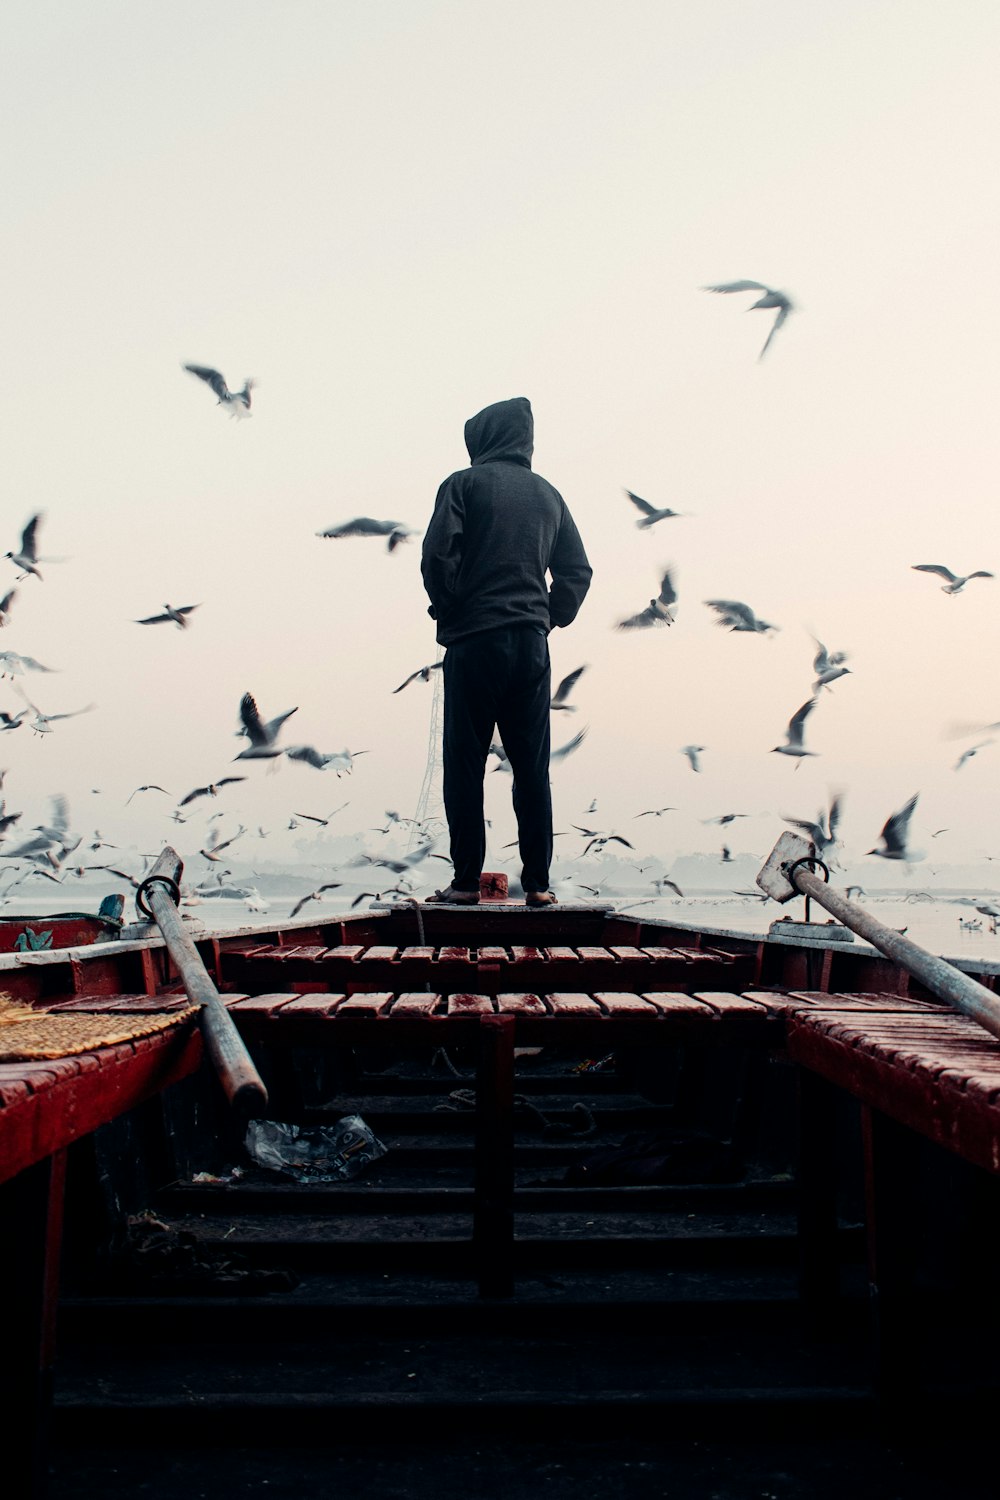 Un hombre parado en la parte superior de un bote rodeado de gaviotas